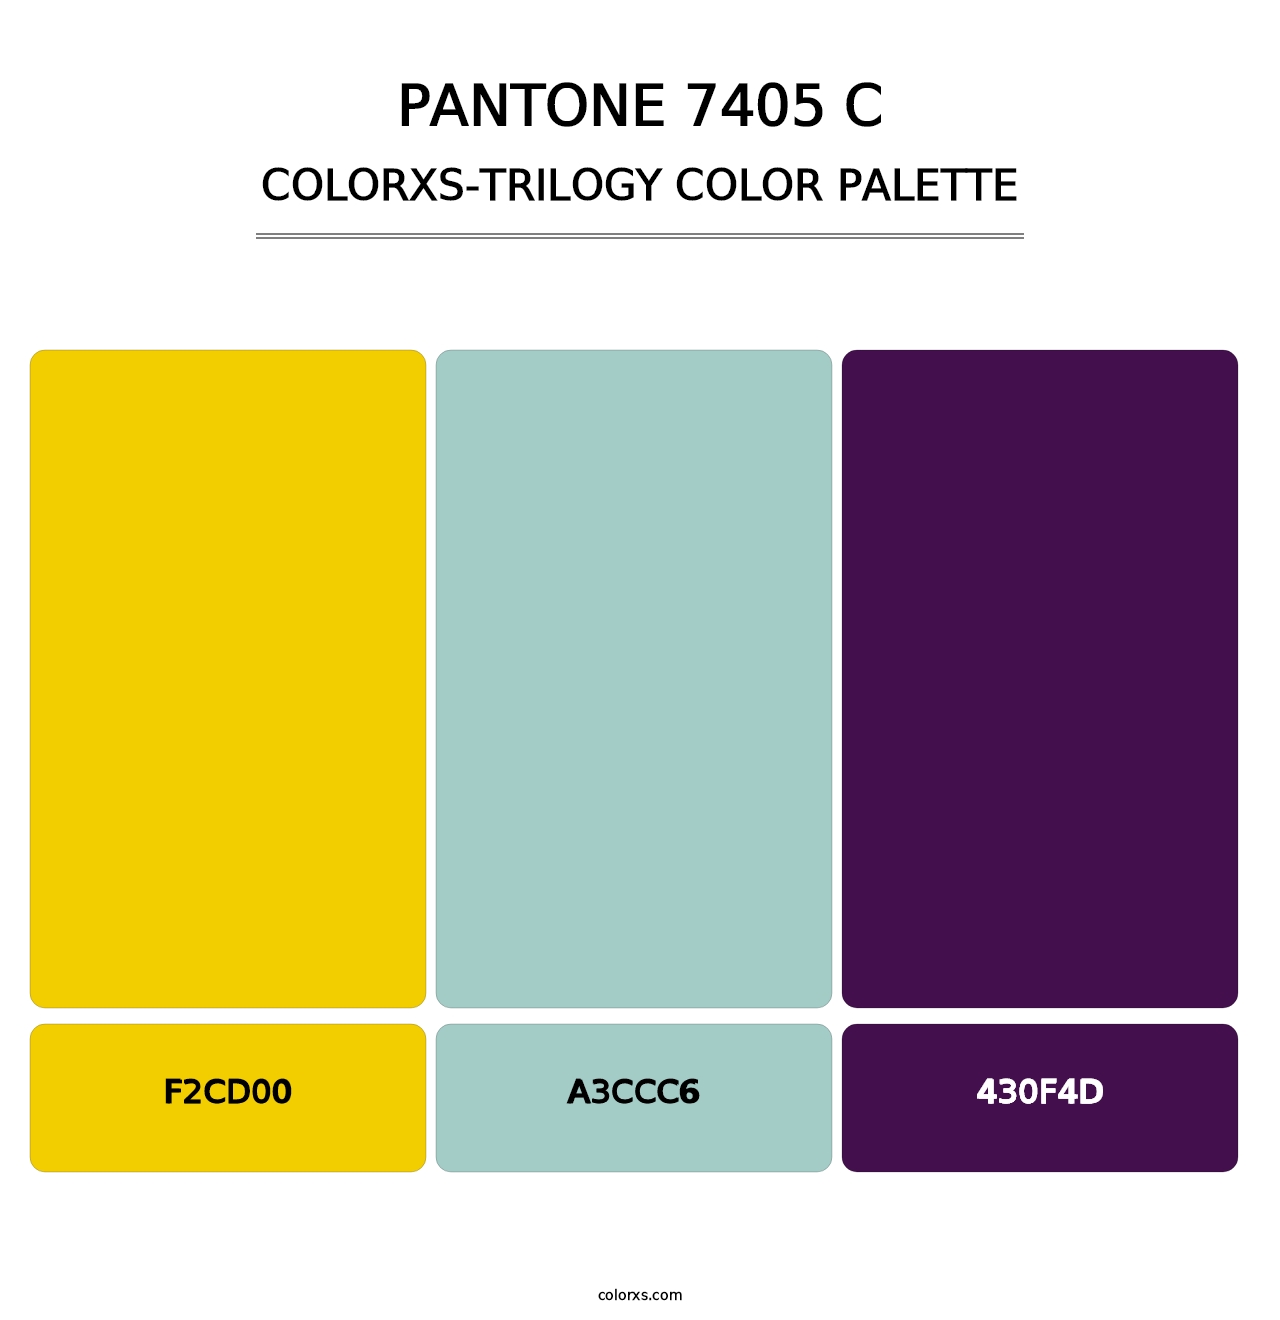 PANTONE 7405 C - Colorxs Trilogy Palette